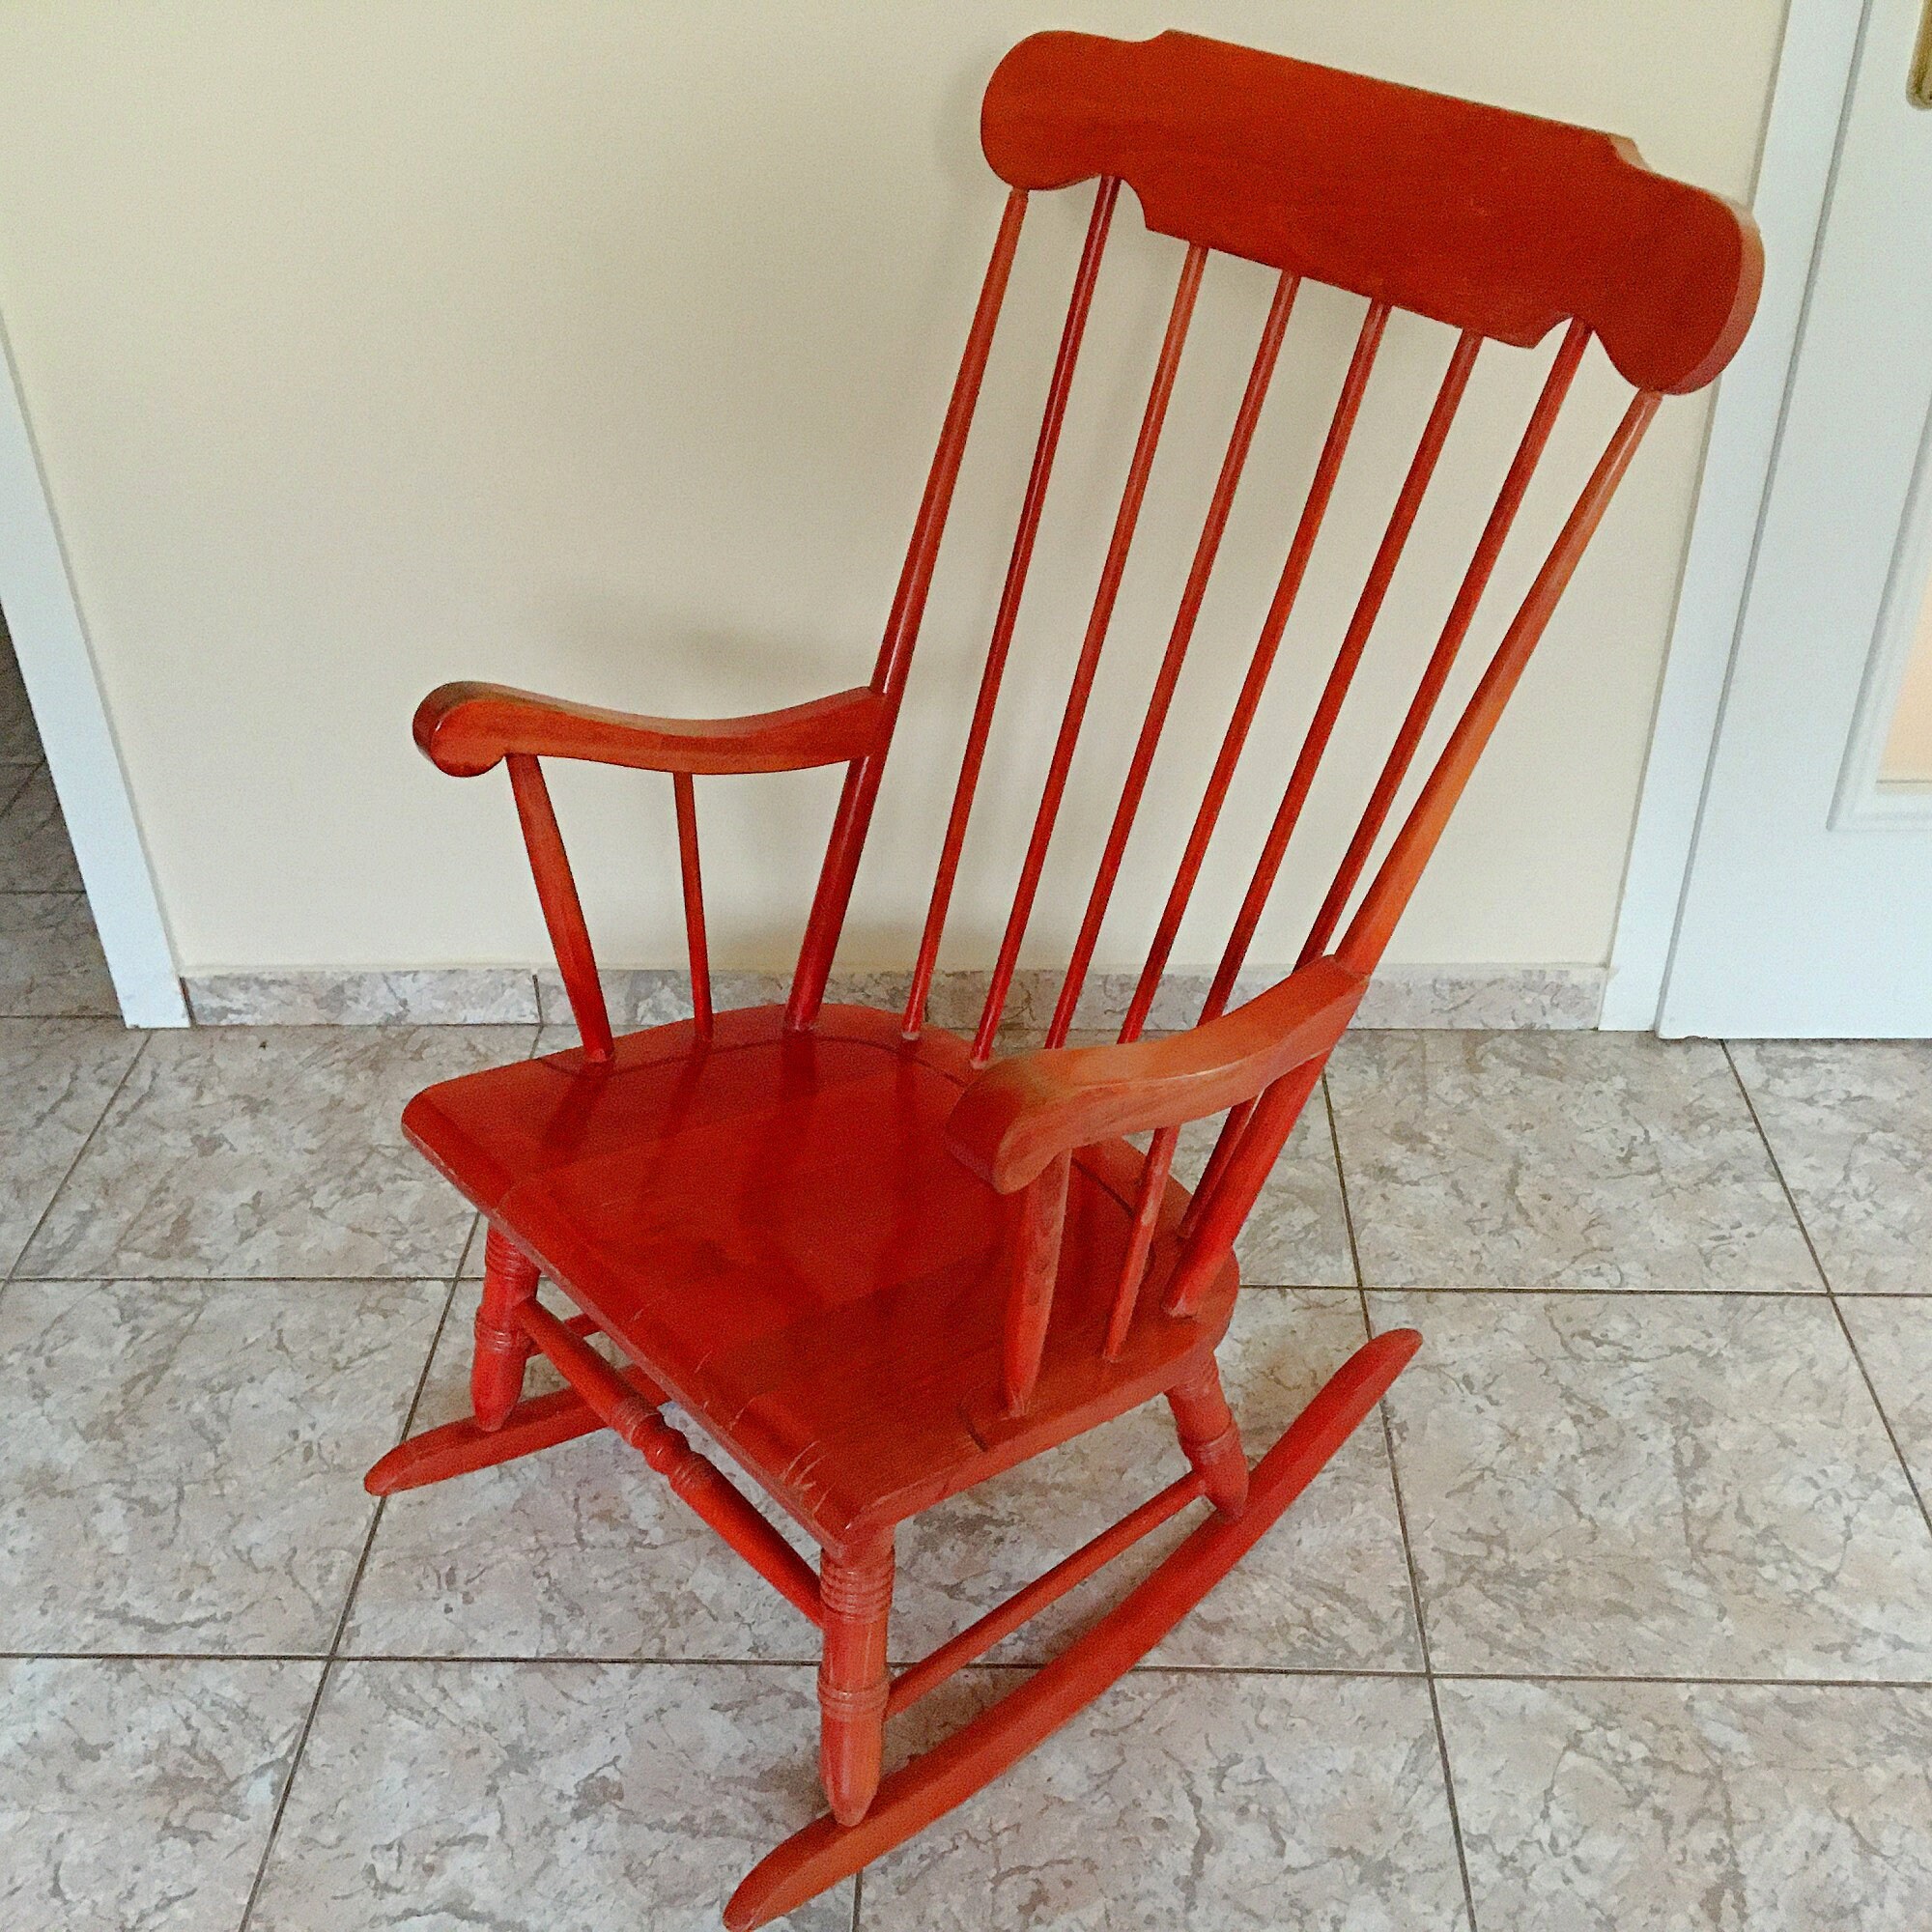 Bewusteloos Beenmerg Op de grond Vintage schommelstoel rood hout jaren 60 mid century retro - Etsy Nederland